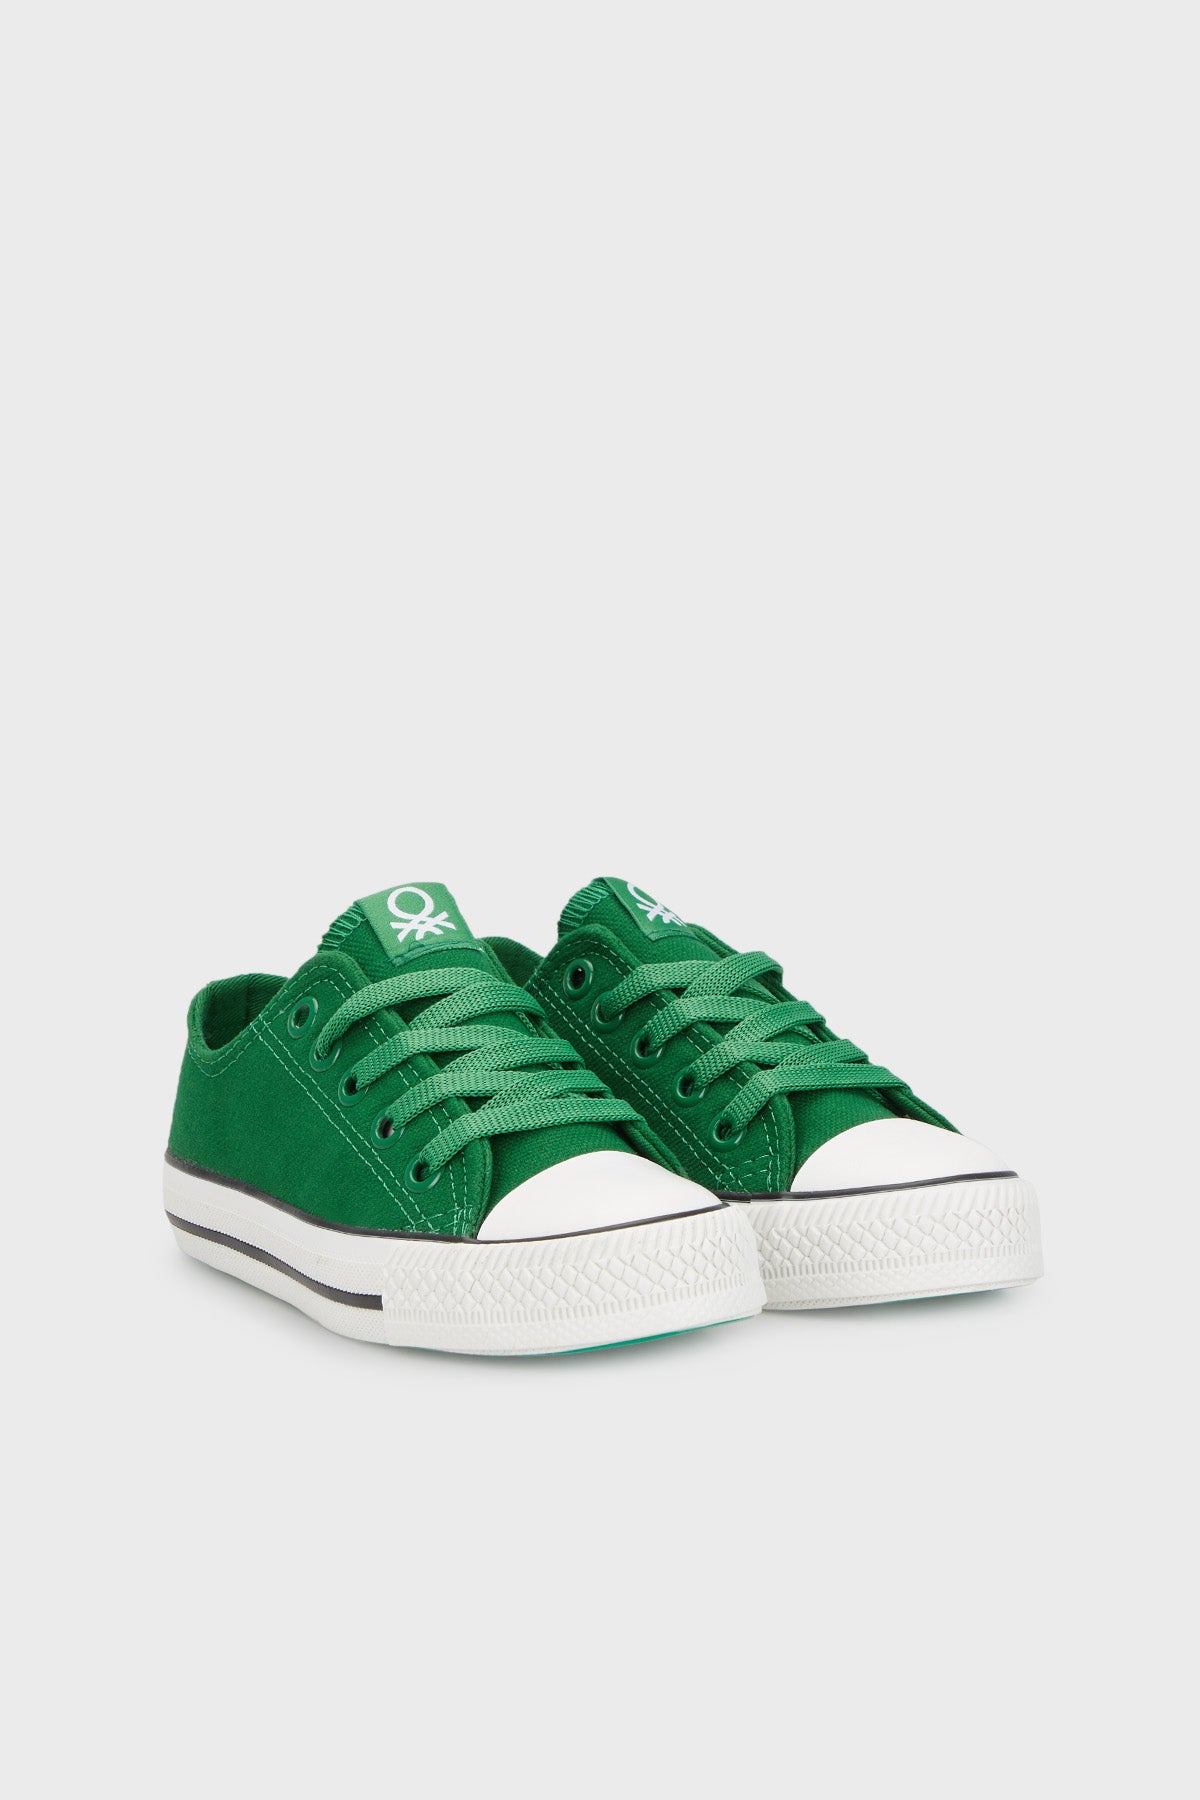 United Colors Of Benetton Sneaker Unisex Çocuk Ayakkabı BN30685 YEŞİL